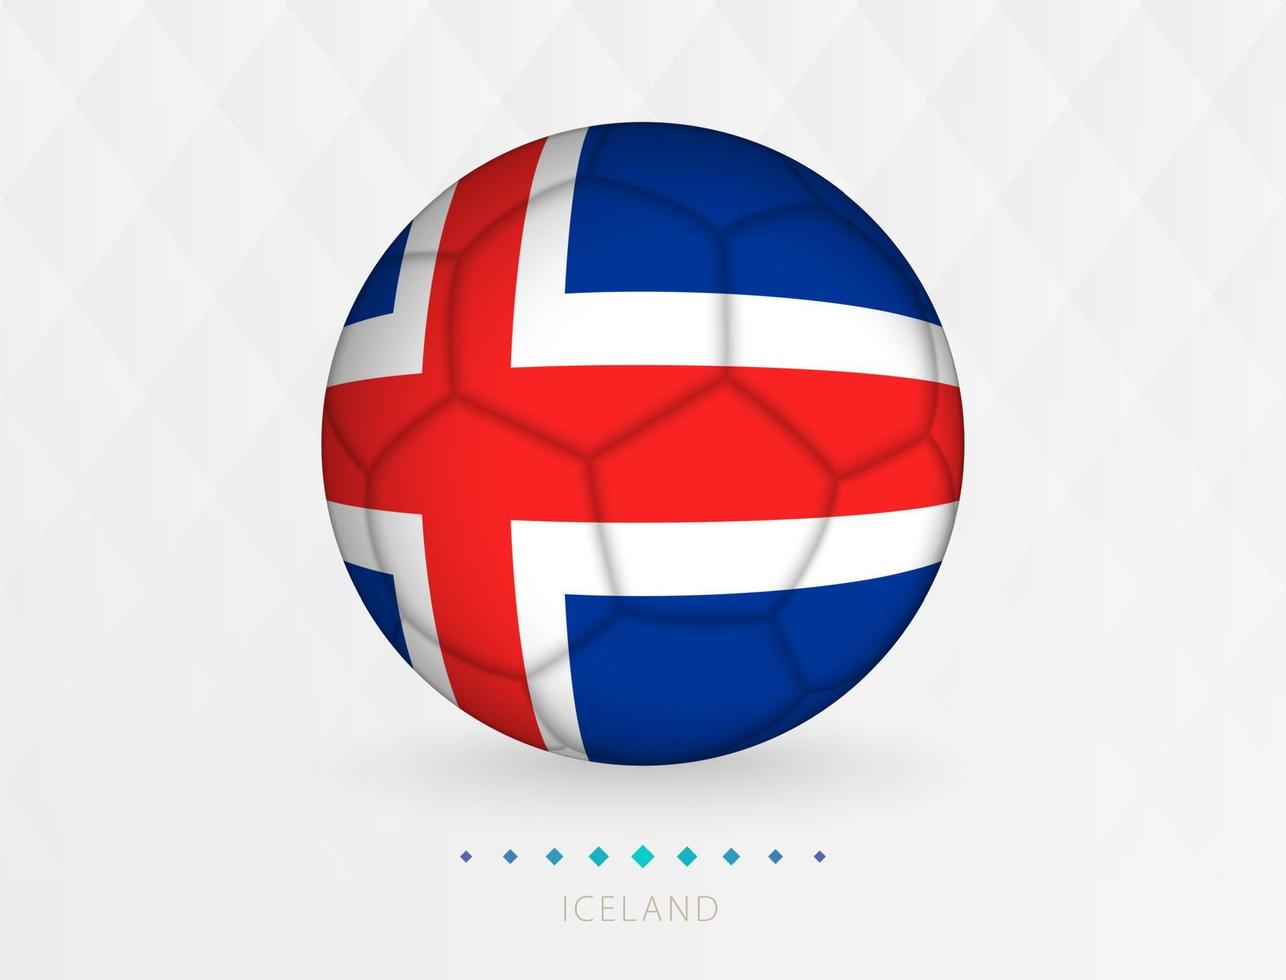 ballon de football avec motif drapeau islandais, ballon de football avec drapeau de l'équipe nationale islandaise. vecteur